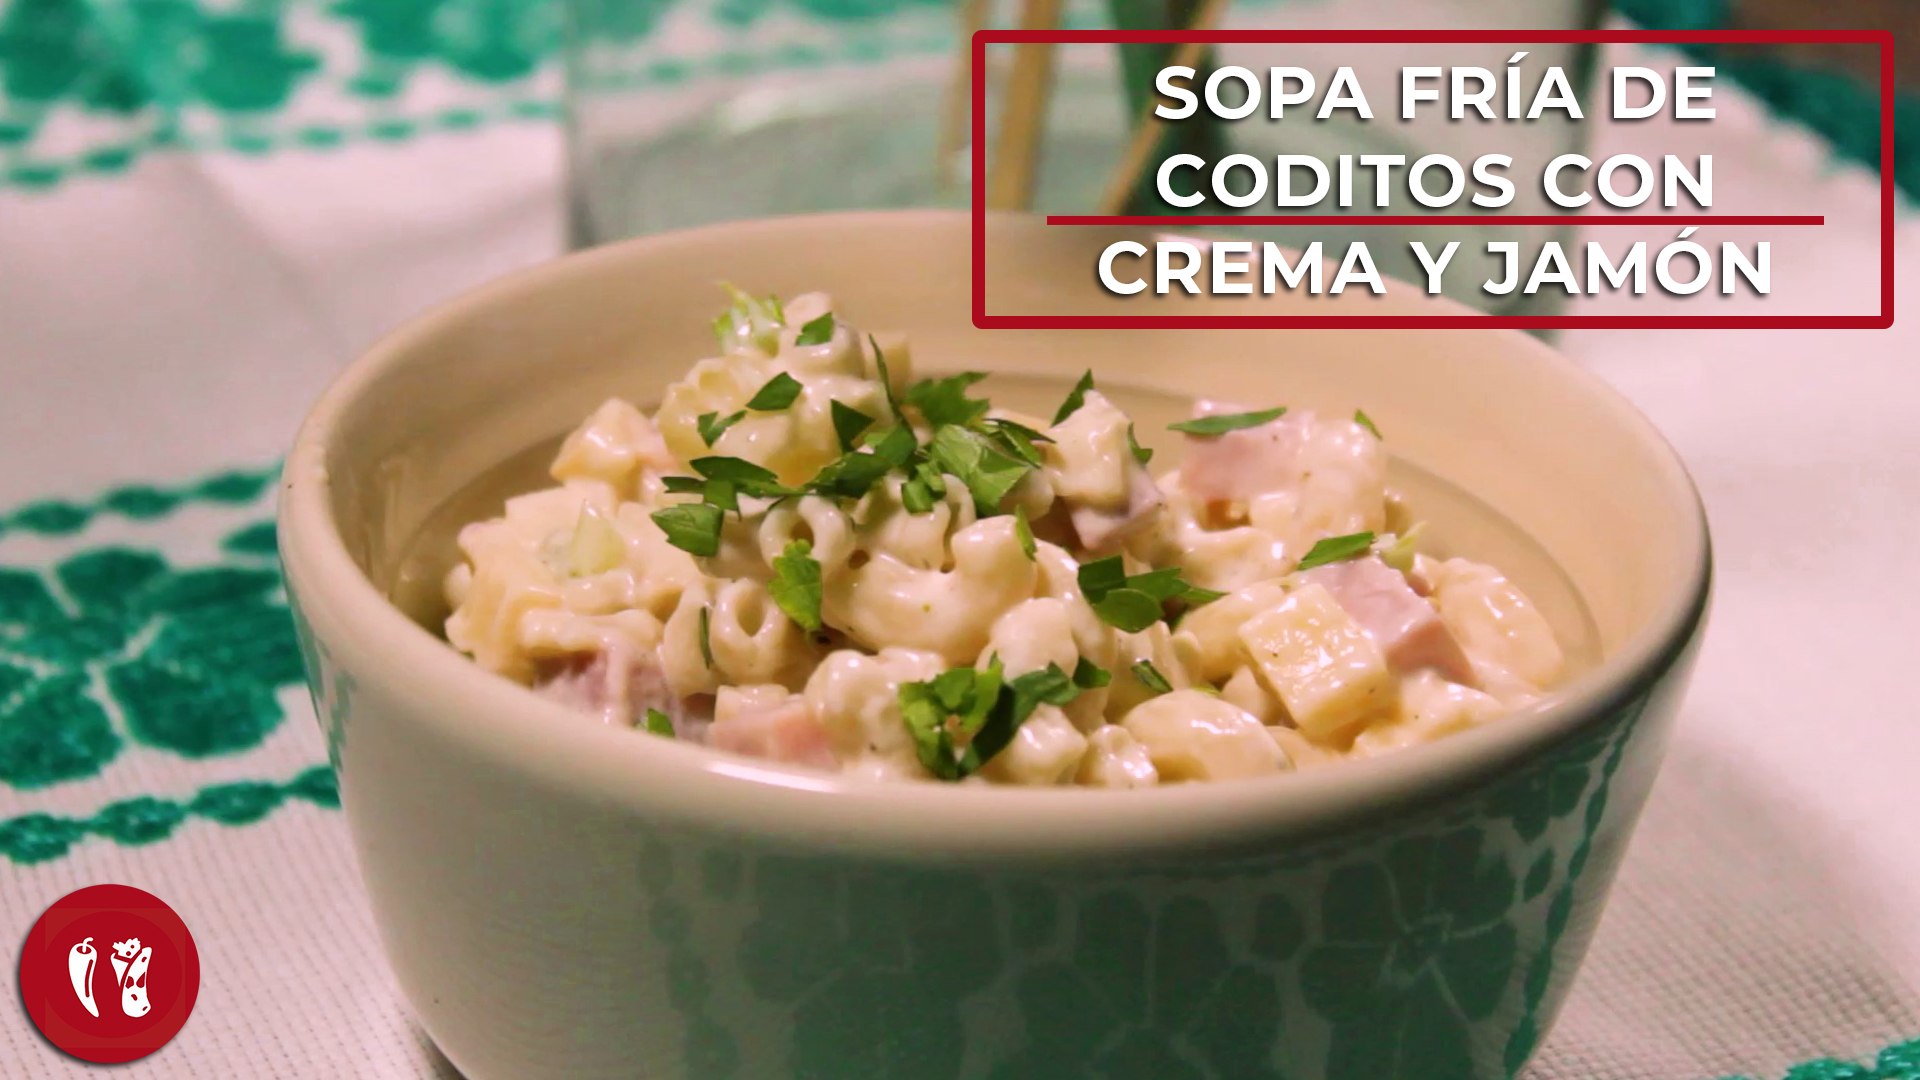 Sopa fría de coditos con crema y jamón | Receta fácil | Directo al Paladar  México - Vídeo Dailymotion